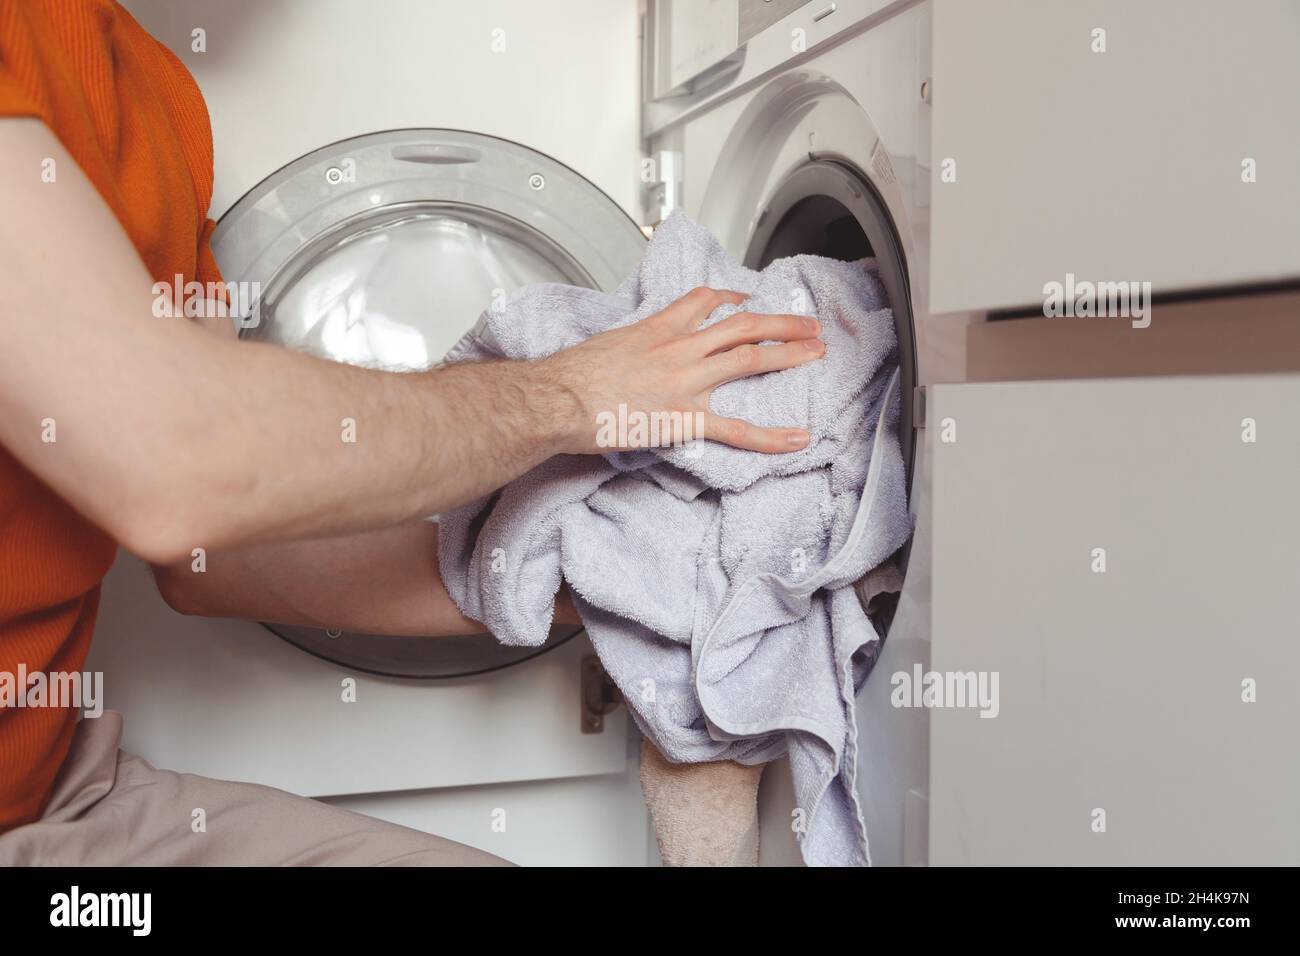 Mann, der farbige Kleidung und Handtücher in die eingebaute Waschmaschine einlädt. Stockfoto